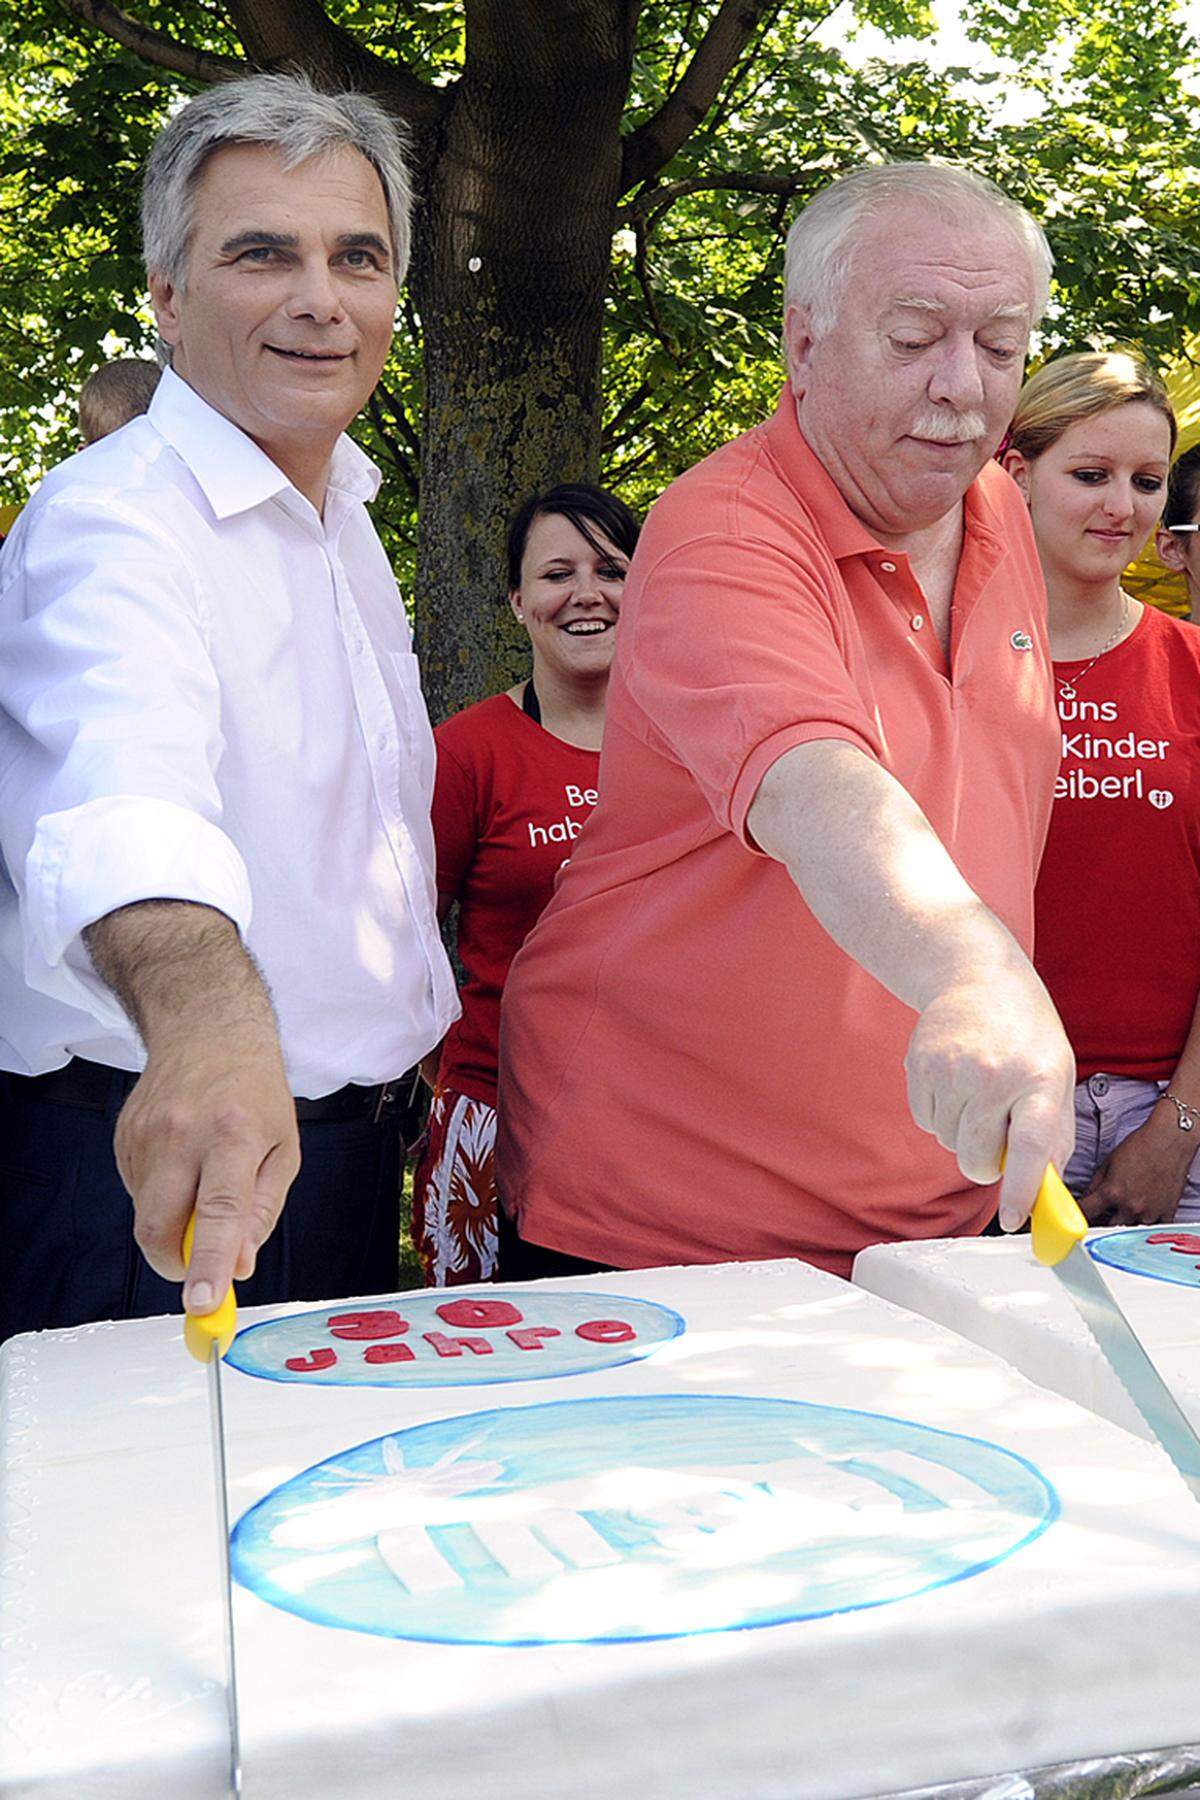 Noch vor der offiziellen Eröffnung um 18 Uhr schnitten Bundeskanzler Werner Faymann und Bürgermeister Michael Häupl den Jubiläumskuchen an und gaben dabei die eine oder andere Donauinselfest-Erinnerung zum Besten.